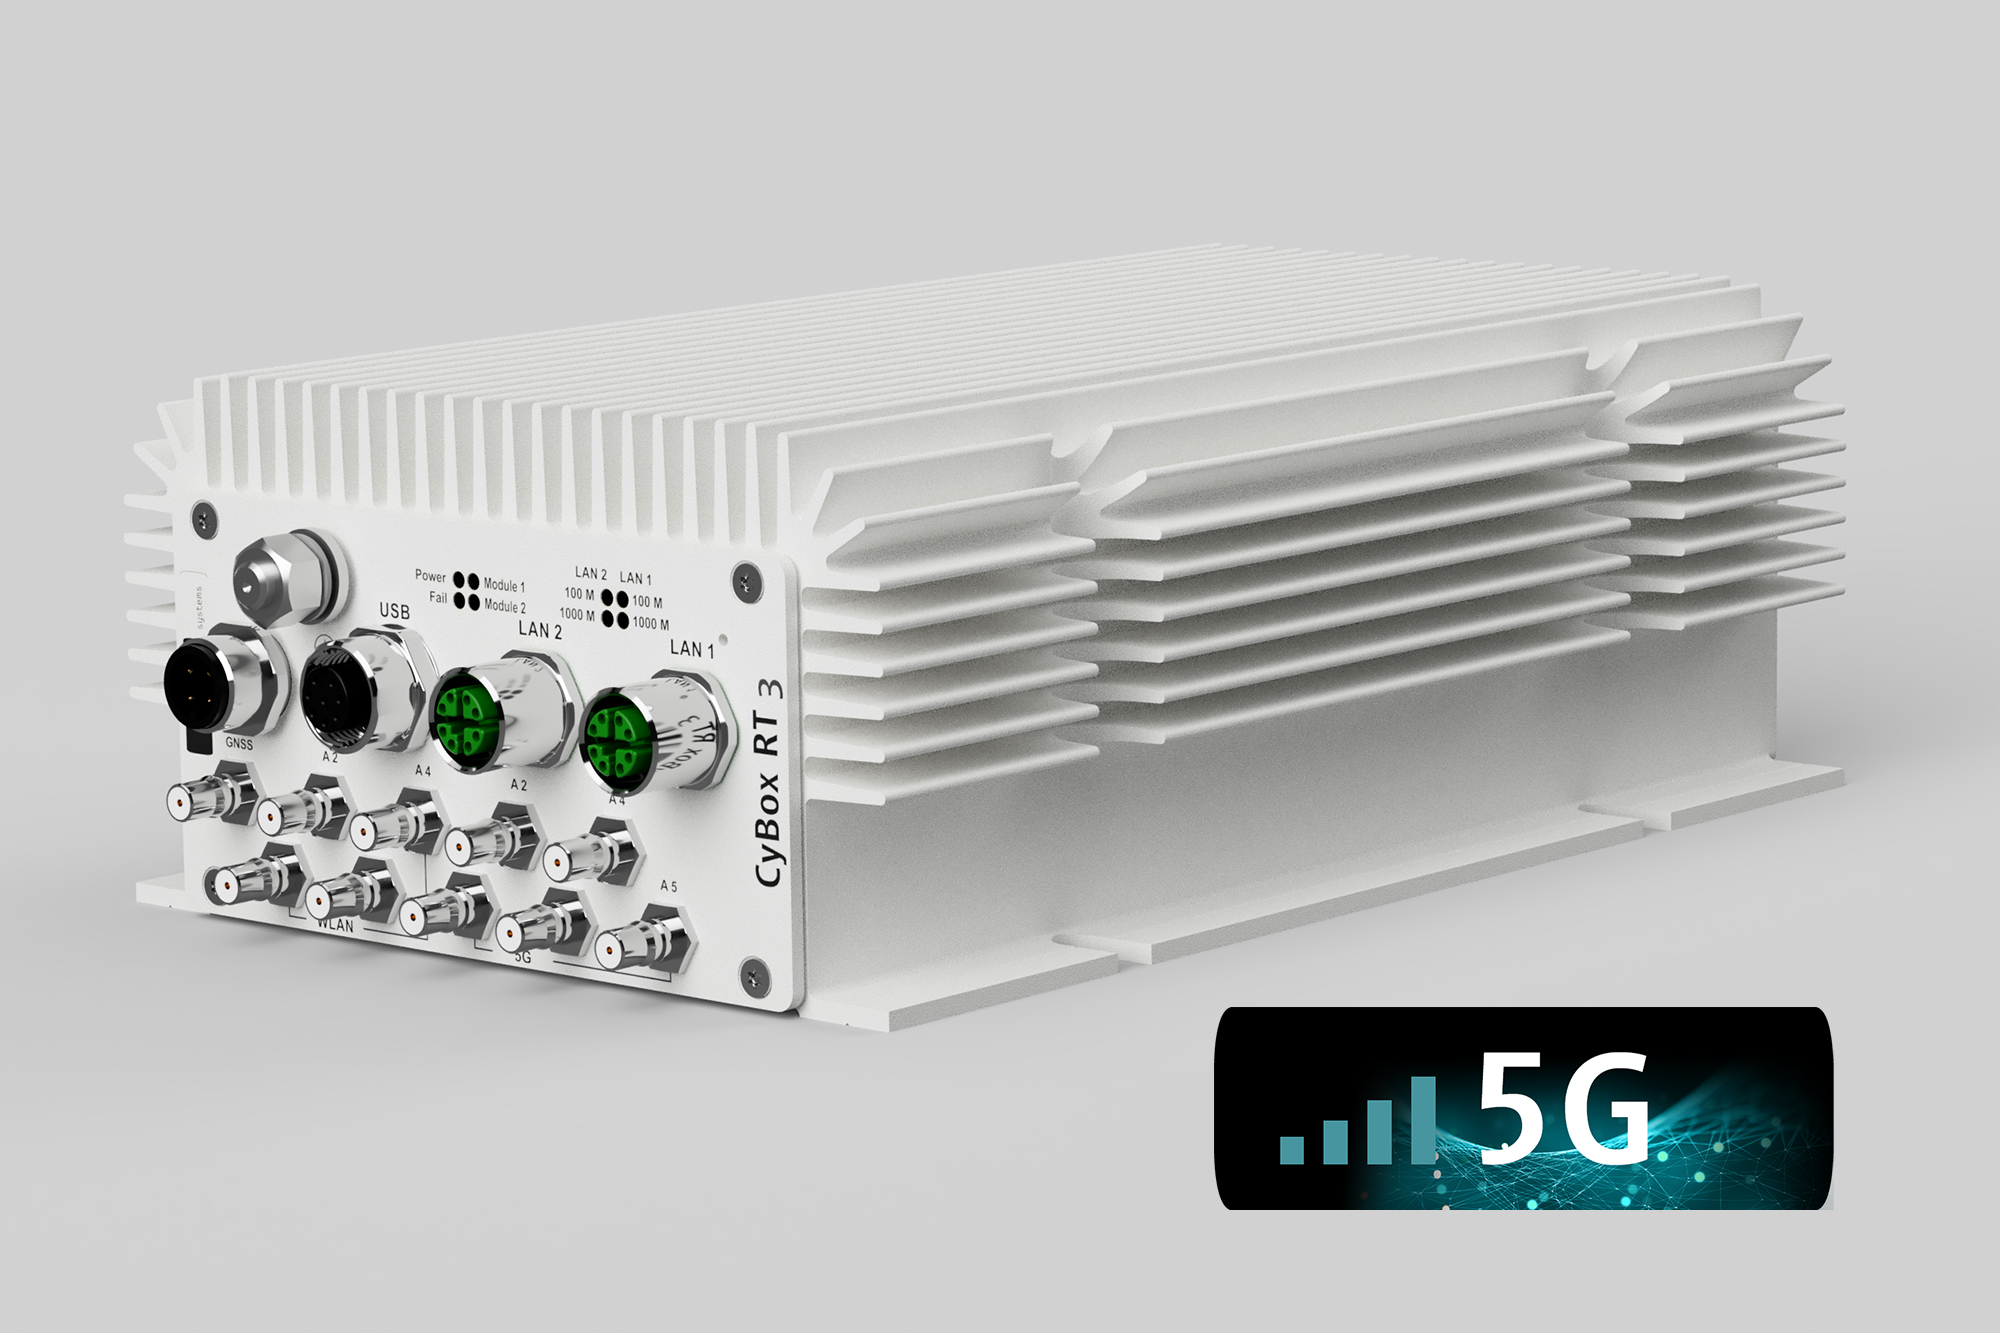 Mit der CyBox RT 3-W steht ein robuster, wartungsfreier und nach EN 50155 zertifizierter  Router für Anwendungen in der Bahntechnik zur Verfügung.